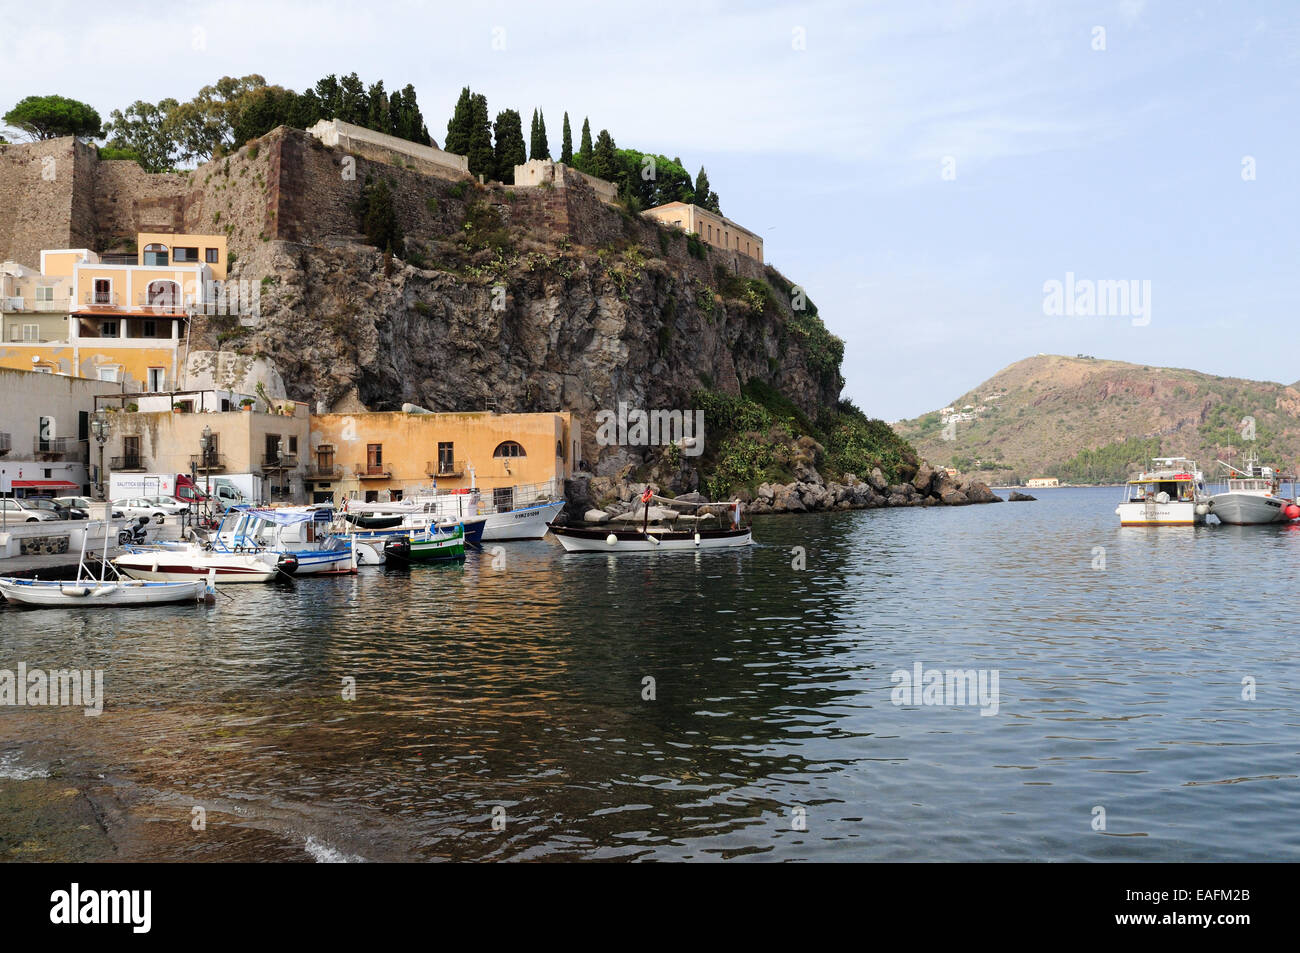 Castle Rock et petits bateaux amarrés au port, l'île de Lipari Sicile Italie Banque D'Images